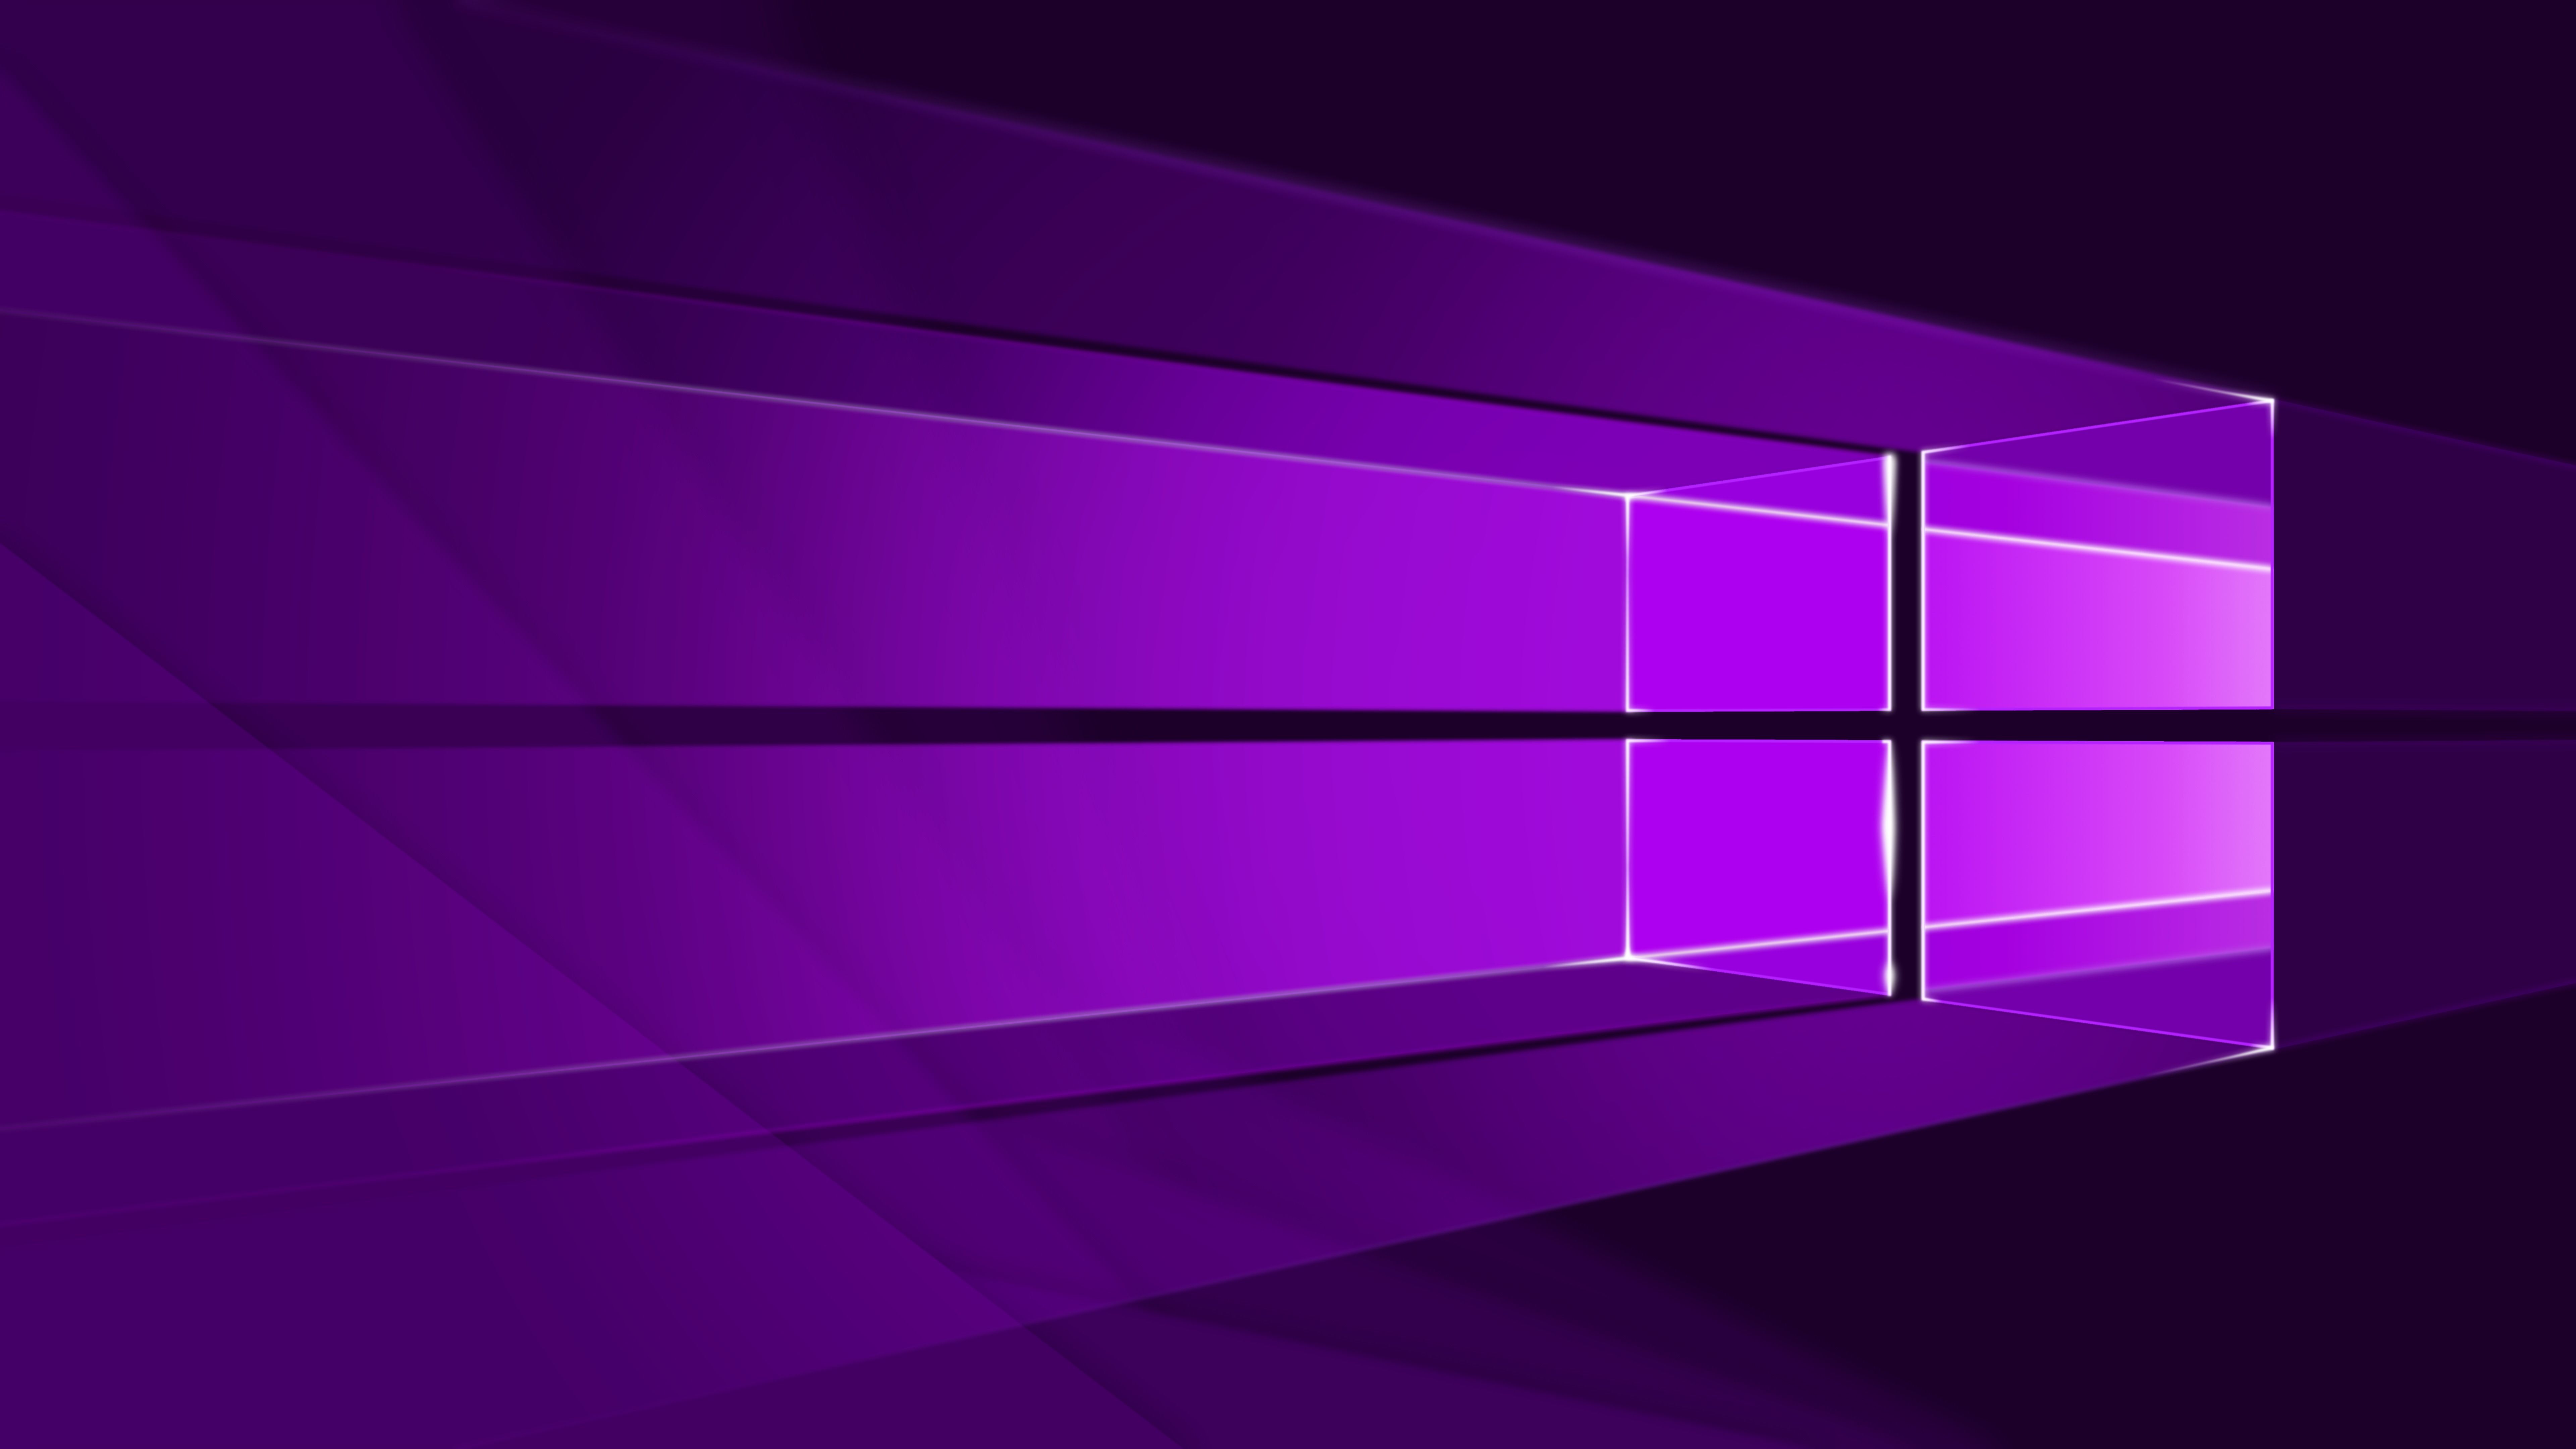 Bạn muốn tải miễn phí hình nền Microsoft 8K UHD để trang trí cho chiếc máy tính yêu quý của mình? Hãy thực hiện điều đó ngay bây giờ và tận hưởng sự đẹp của hình nền này. Với hình ảnh độ phân giải cao như vậy, bạn sẽ không thể ngừng nhìn vào màn hình.